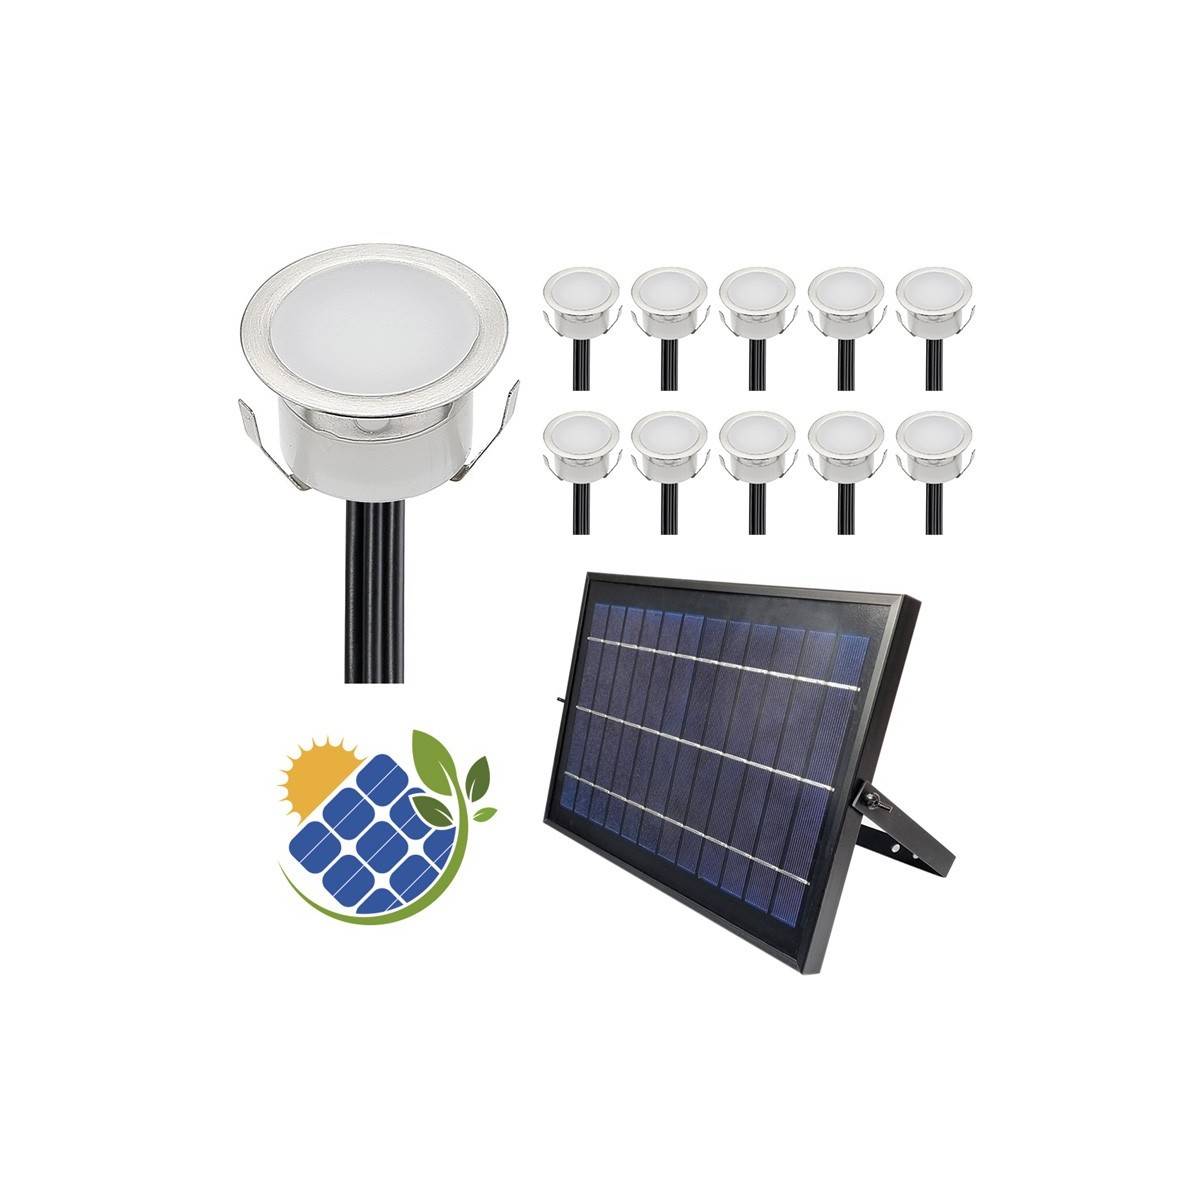 Packung mit 10 eingelassenen Solar-LED-Leuchten mit Solarpanel